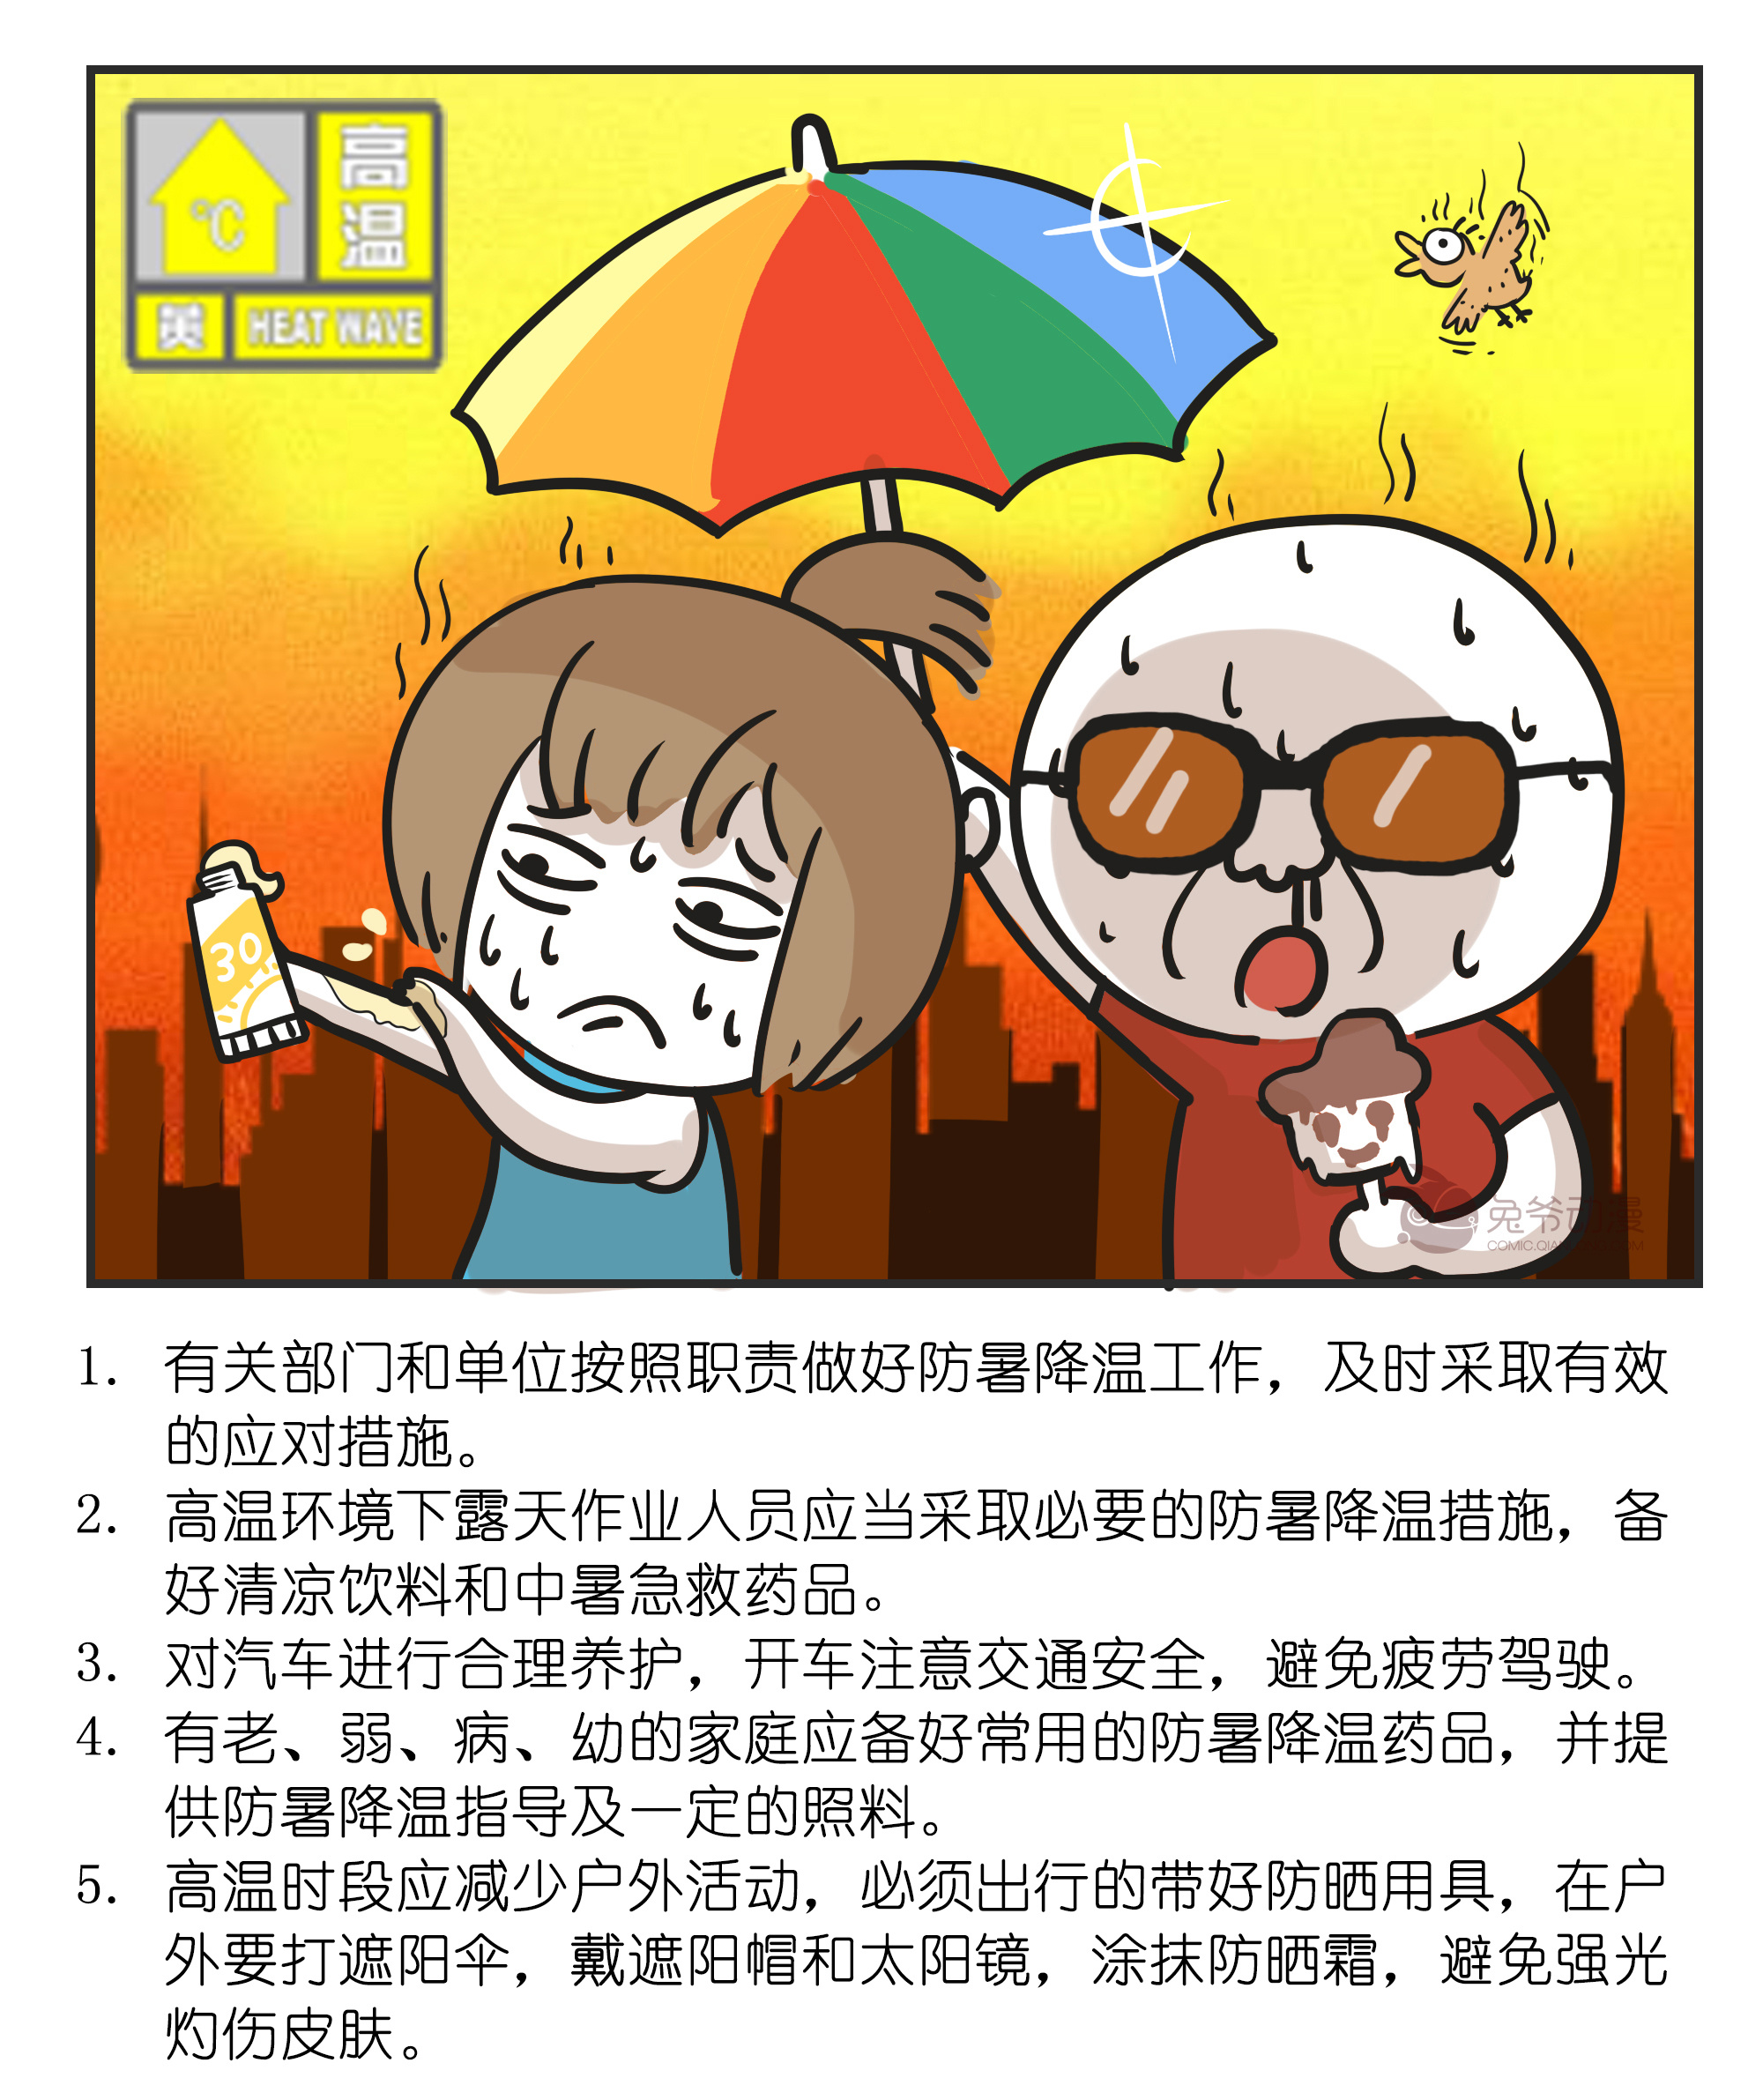 【受权发布】6月27日北京市大部分地区最高气温将达39℃以上